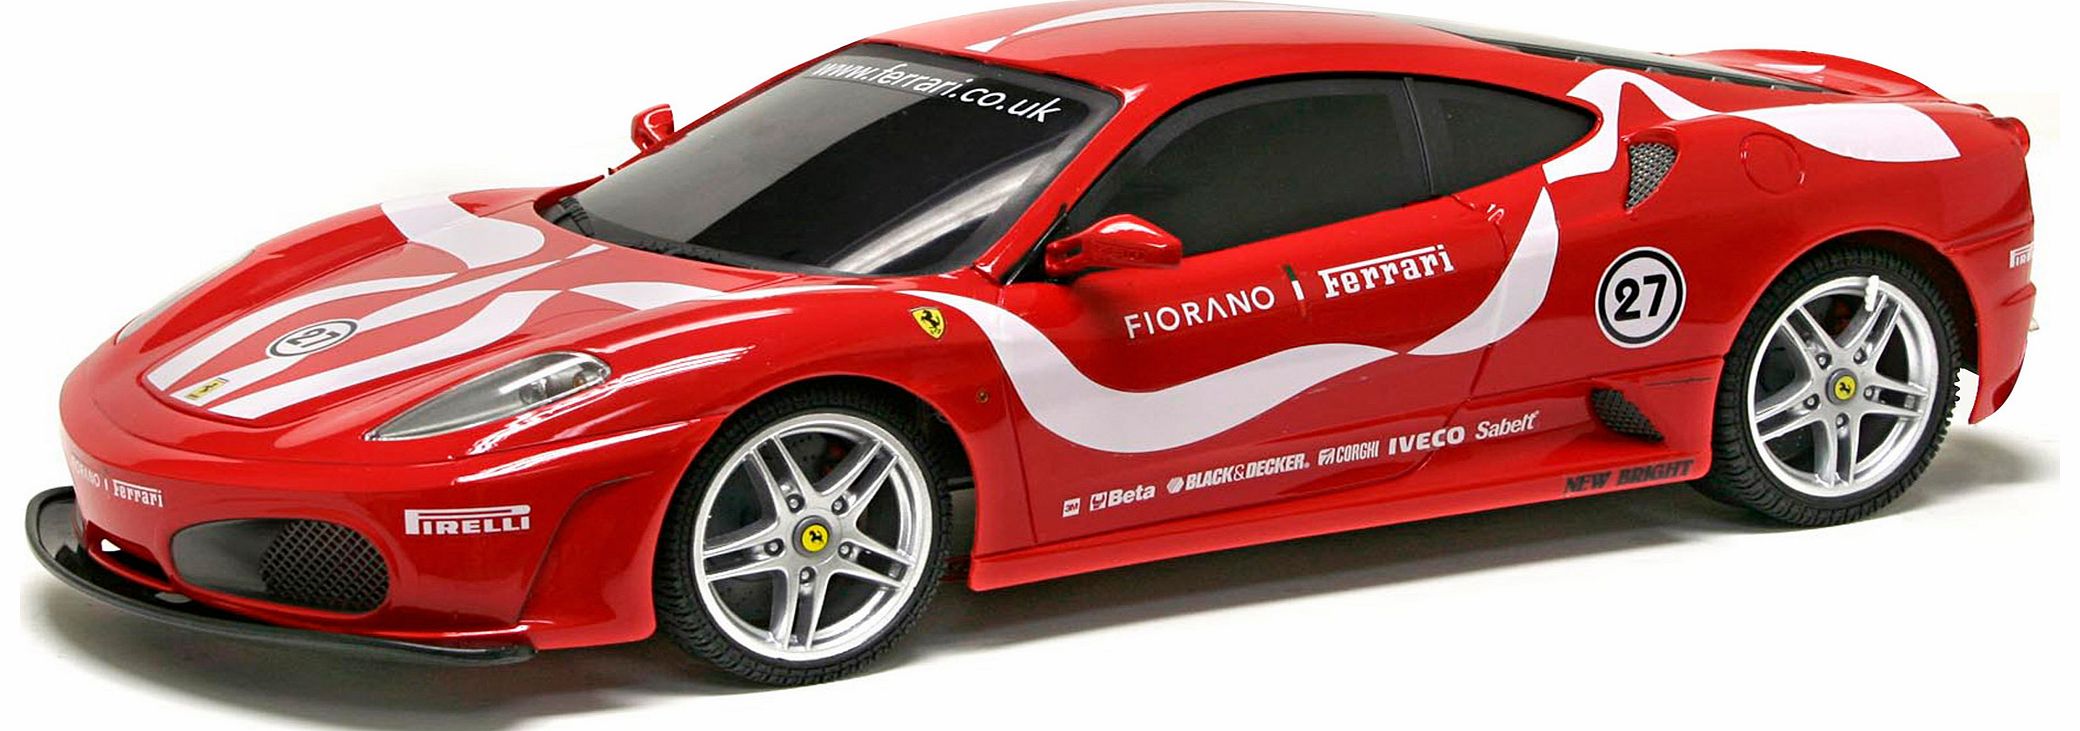 1:10 RC Full Function Fiorano Ferrari